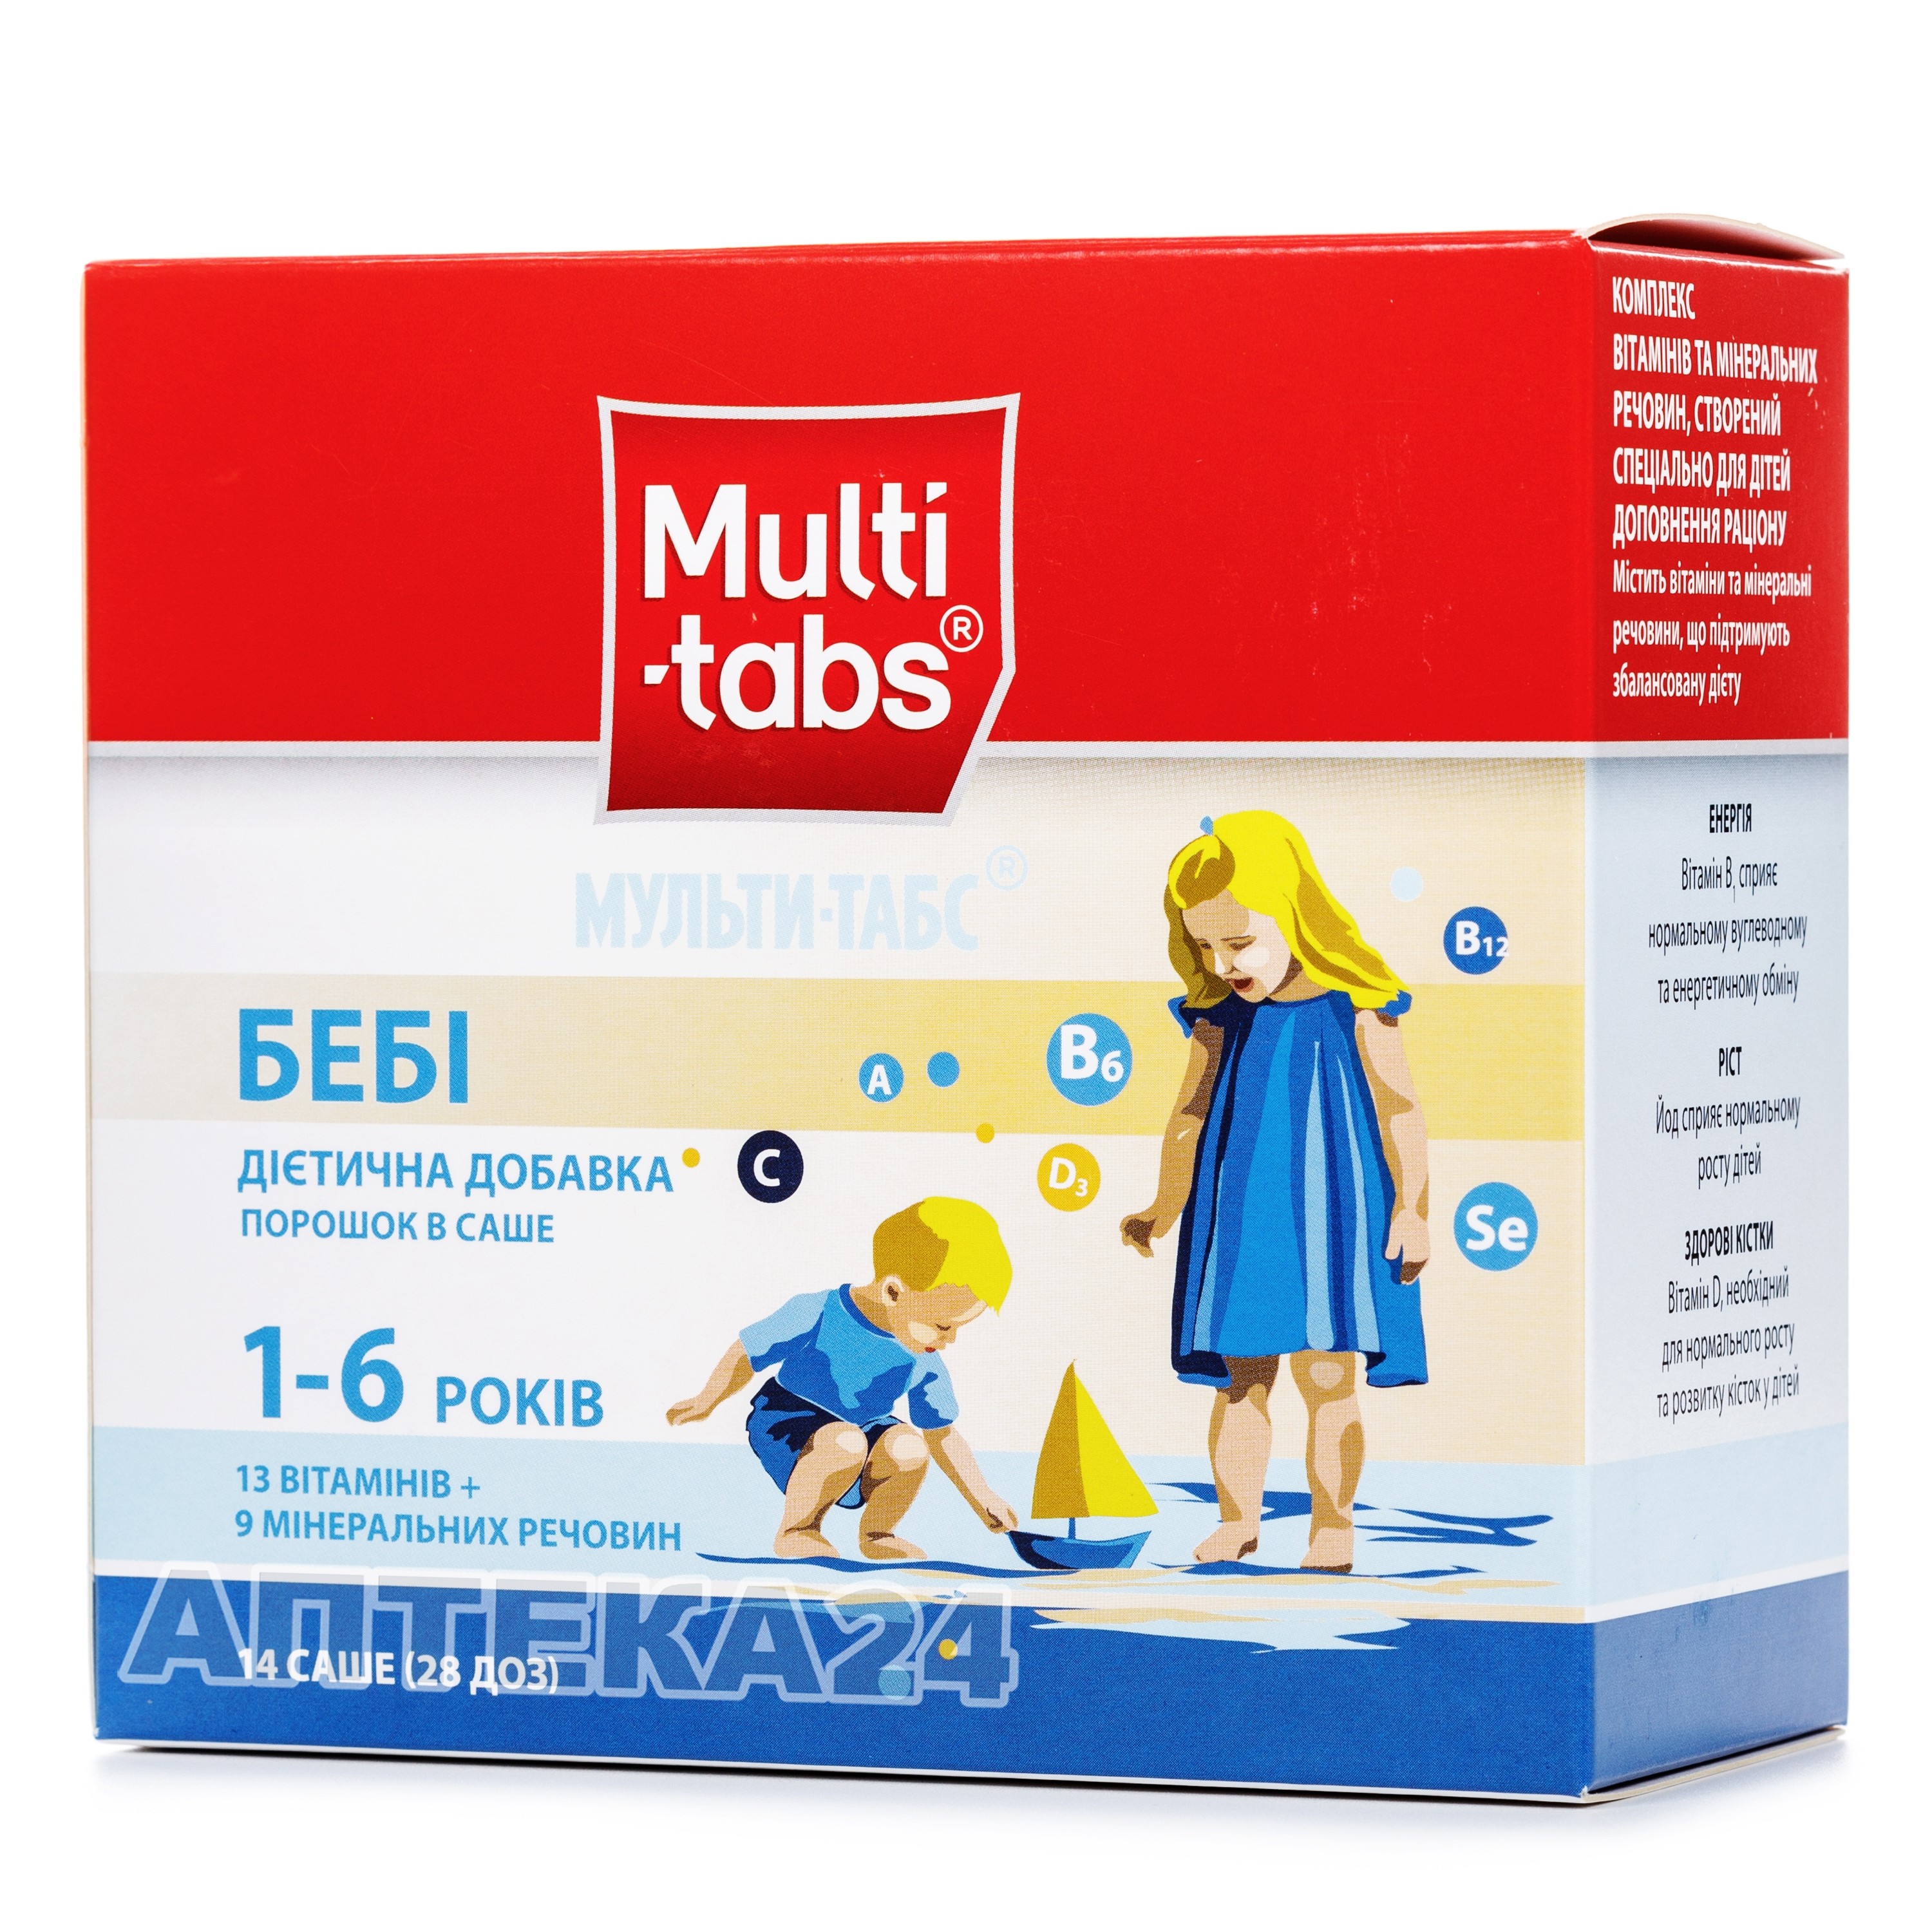 Чесні відгуки про Мульти-табс Бебі вітаміни у порошці в саше для дітей .